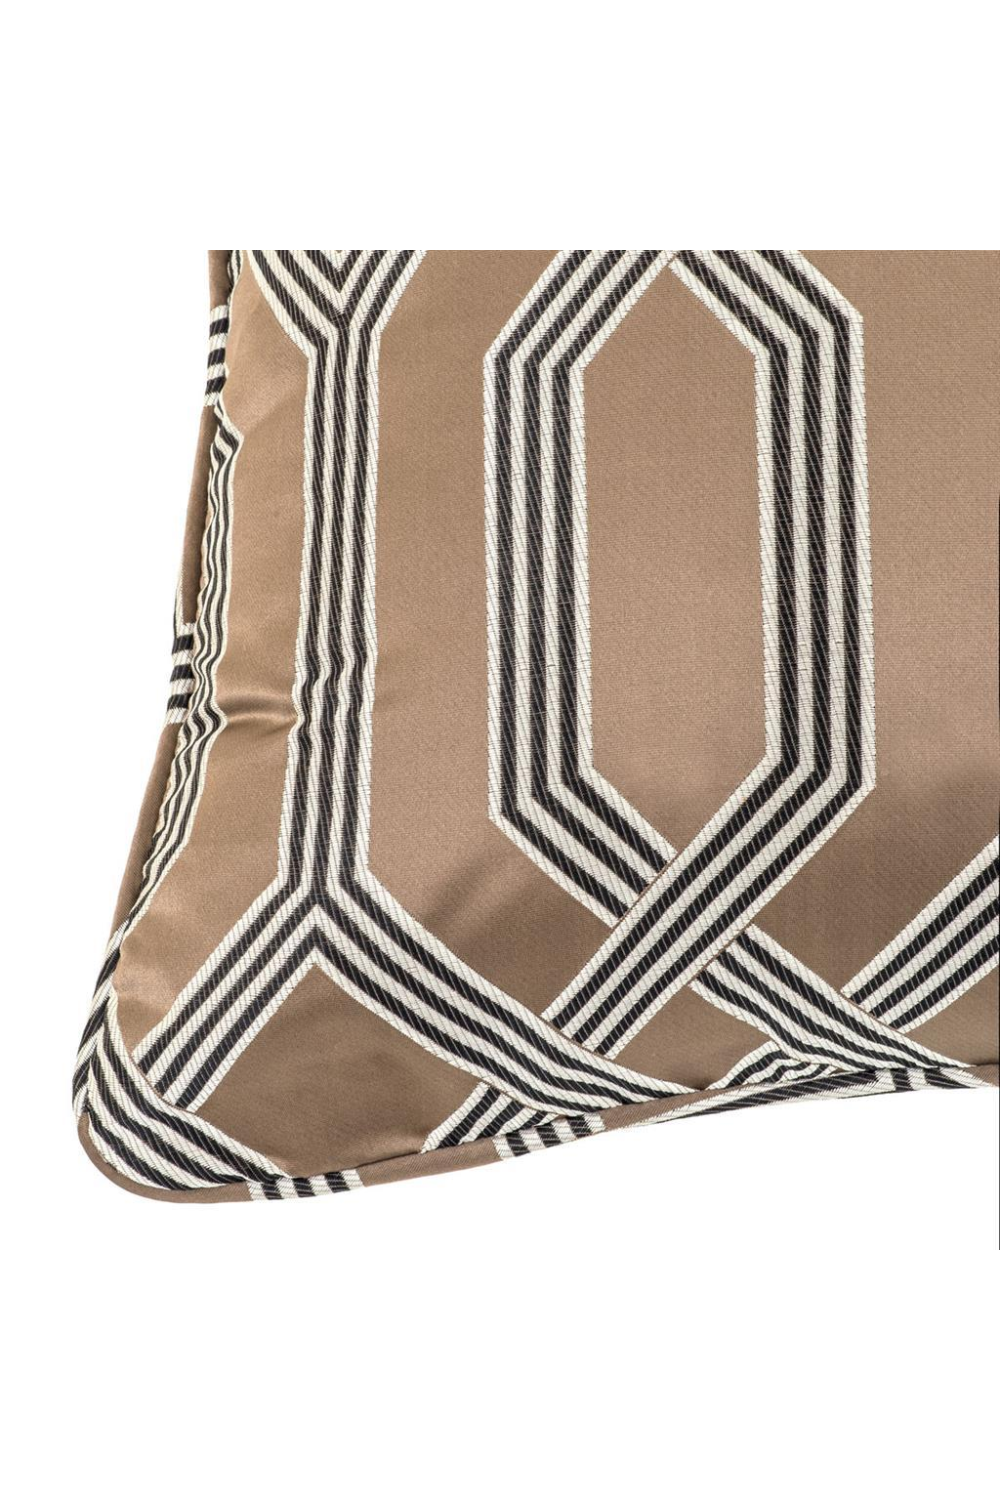 Square Brown Pillow 60cm | Eichholtz Fontaine | OROA